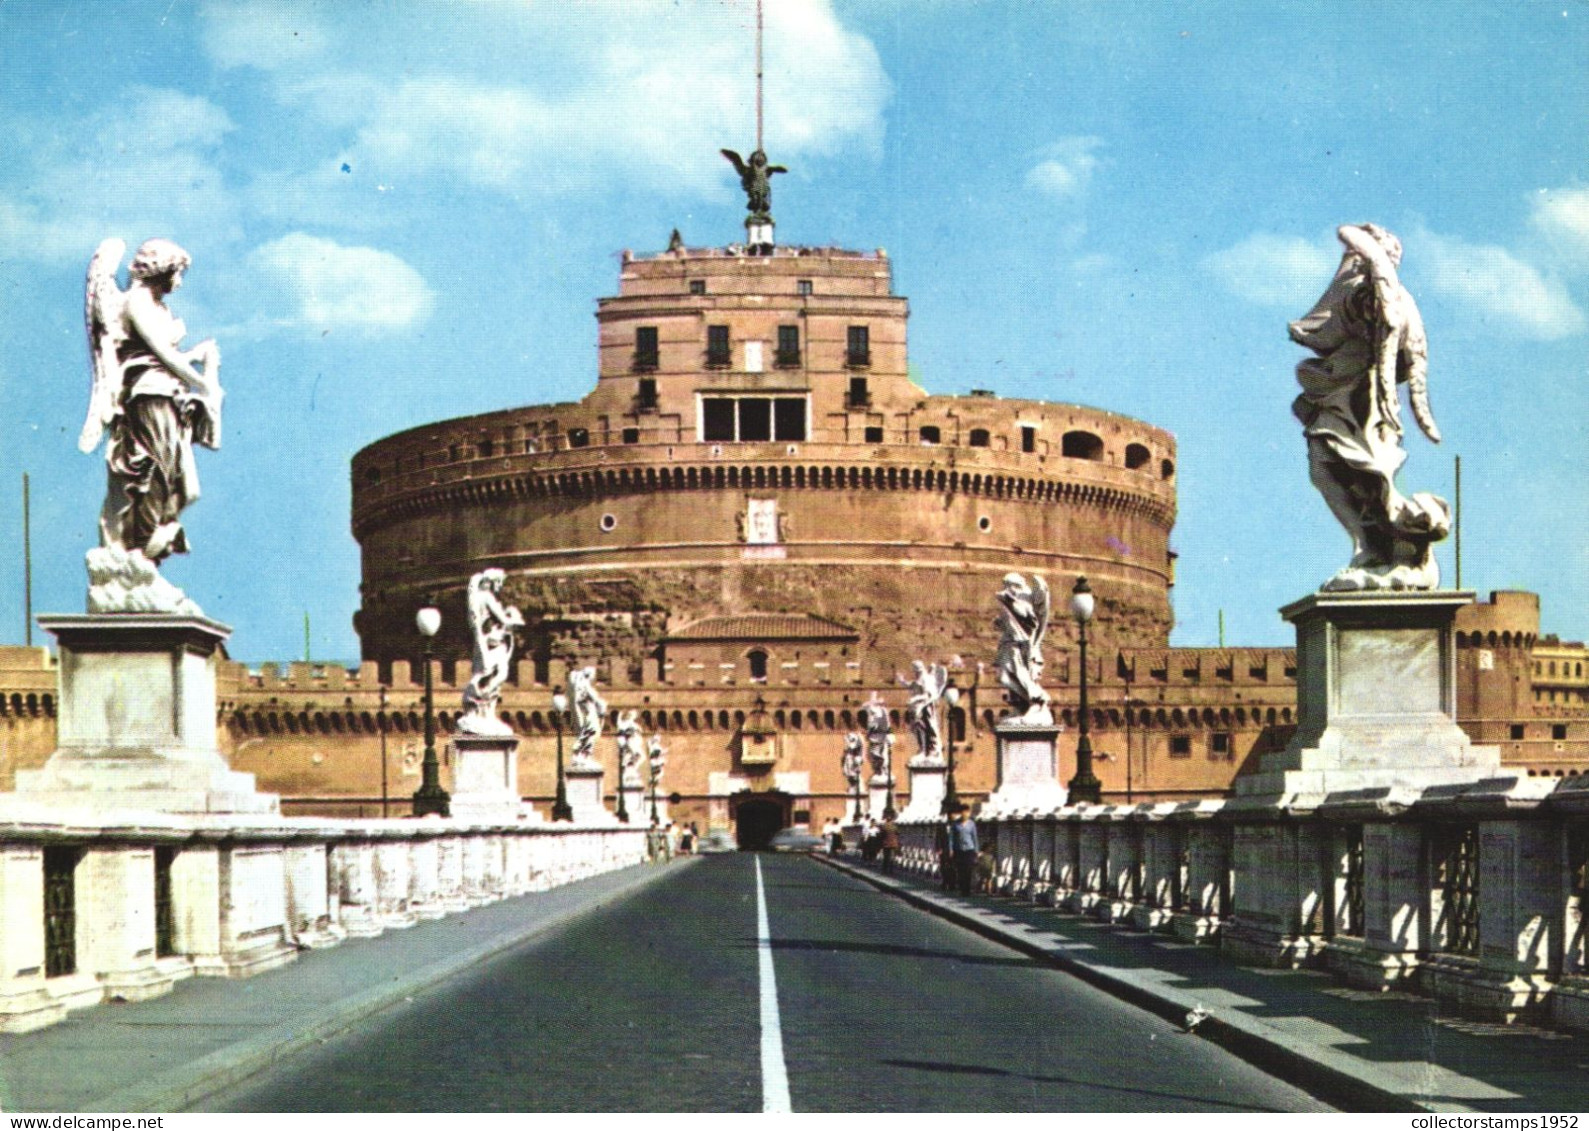 ROME, SAINT ANGELO BRIDGE, CASTLE, ARCHITECTURE, STATUE, ITALY - Bruggen